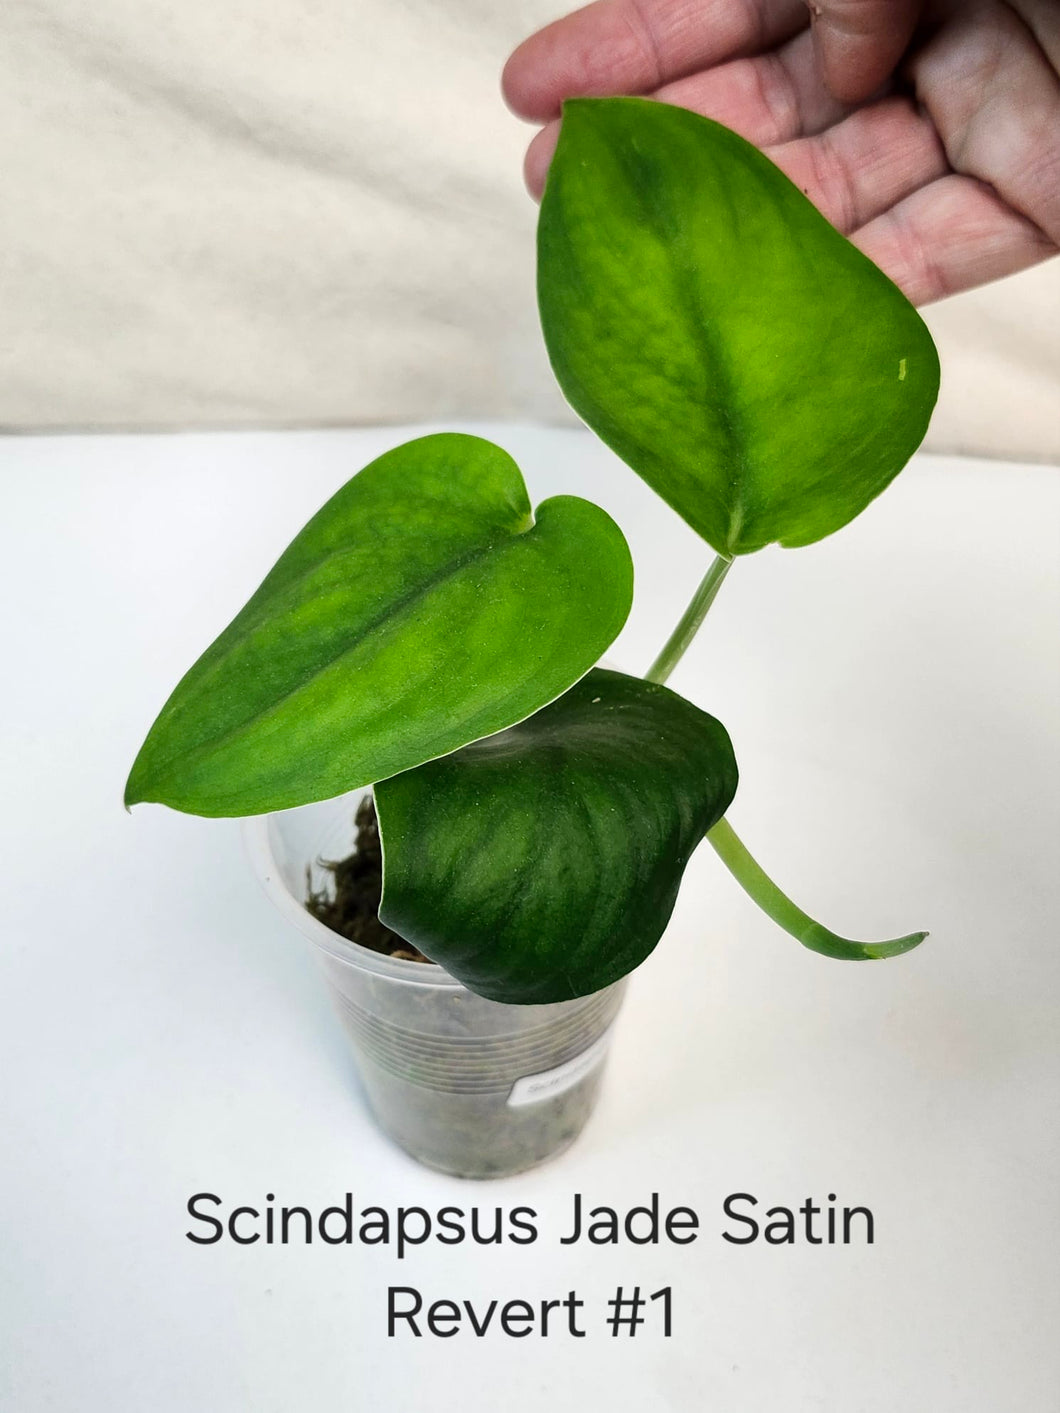 Scindapsus Jade satin revert #1